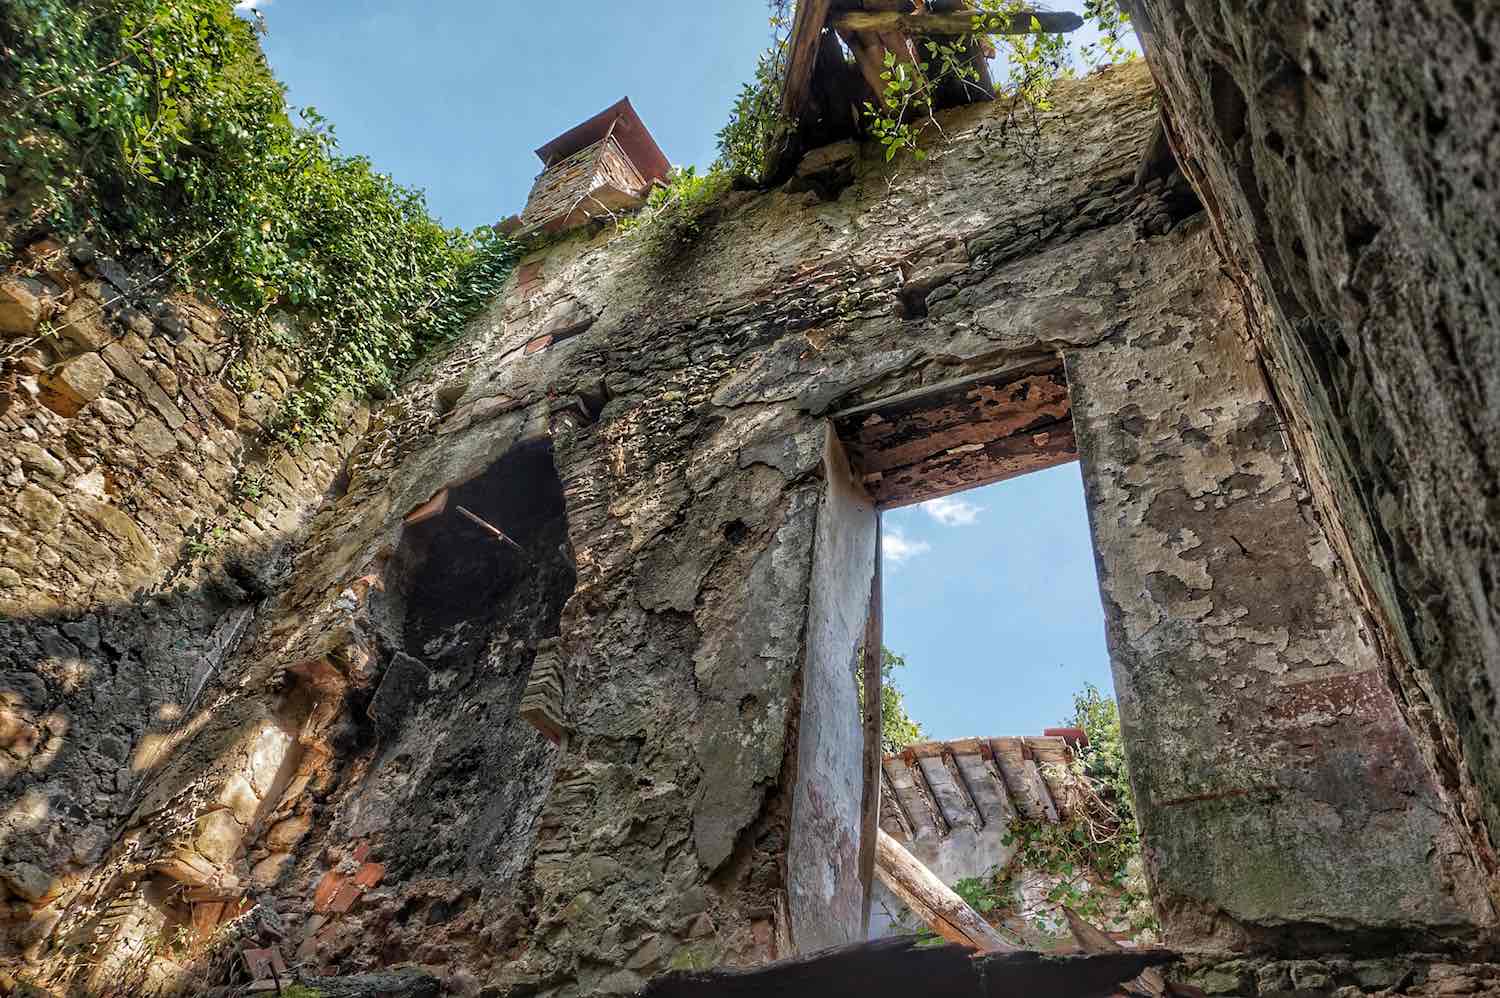 Palazzo in rovina a Bugnano, borgo abbandonato della Toscana